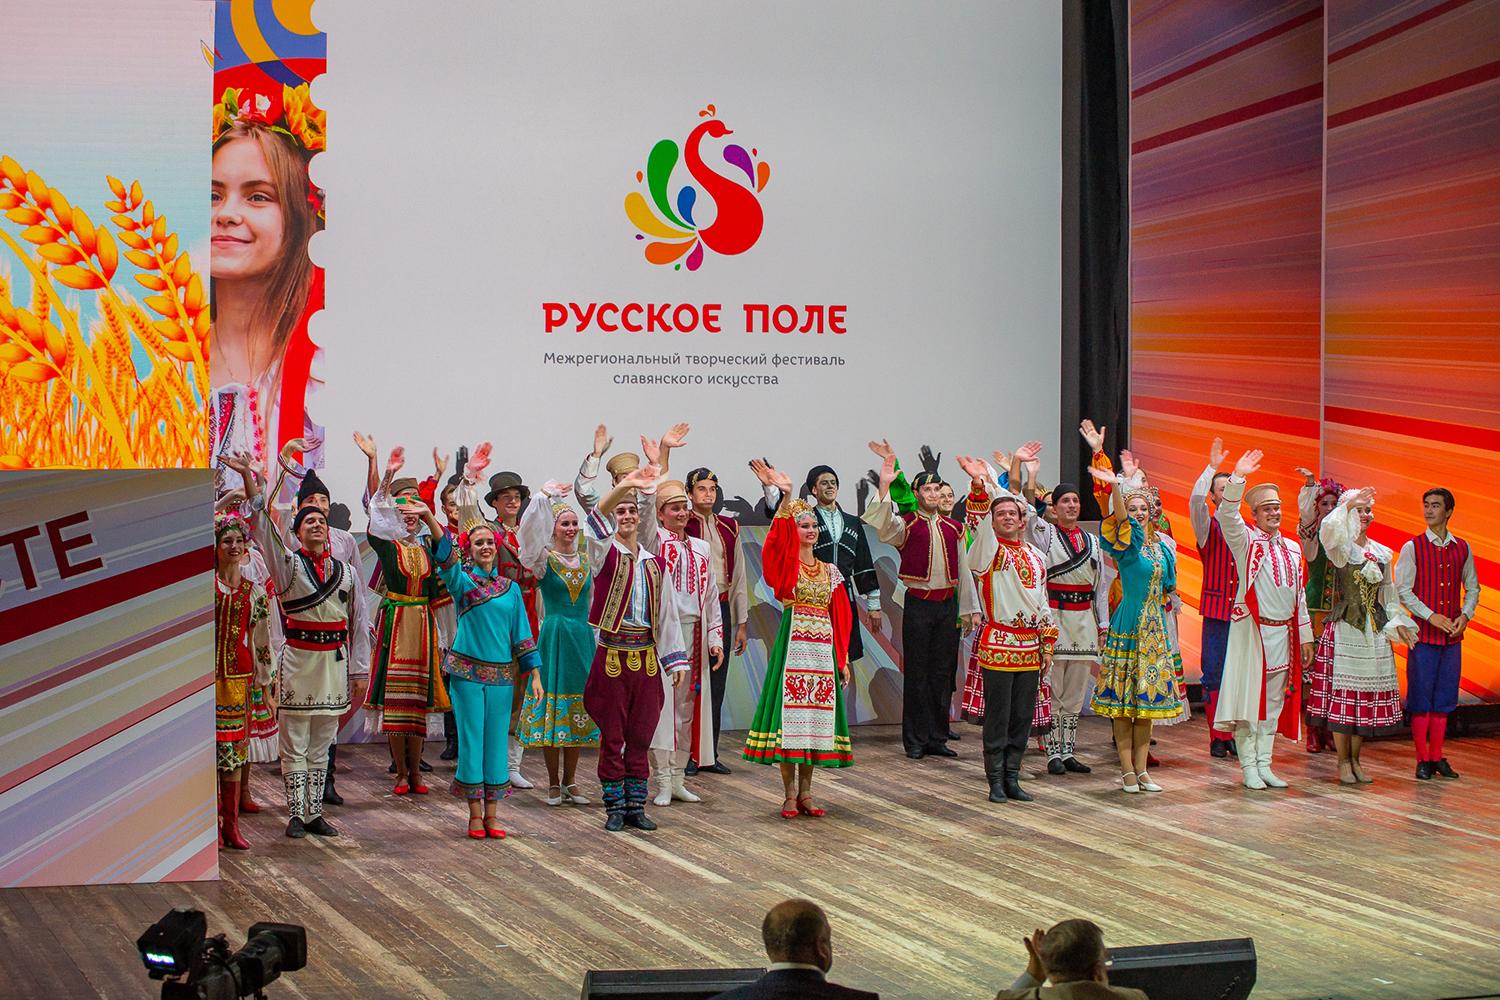 Программа проведения в онлайн-формате 10-го межрегионального творческого фестиваля славянского искусства «Русское поле 2021» 